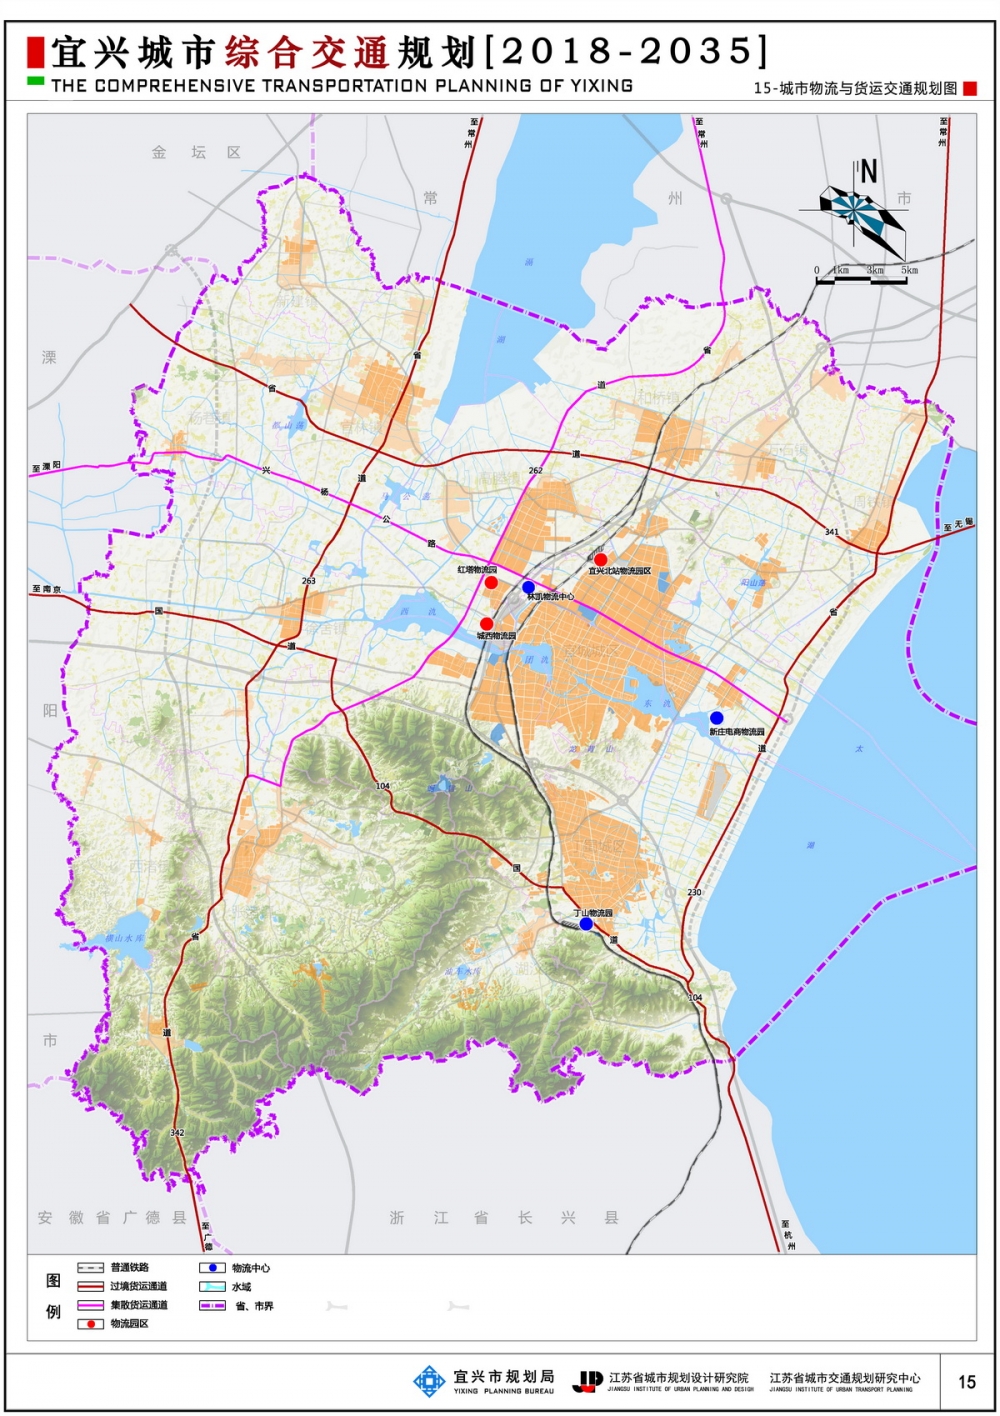 《宜兴城市综合交通规划(2018-2035)》(草案)公示公告